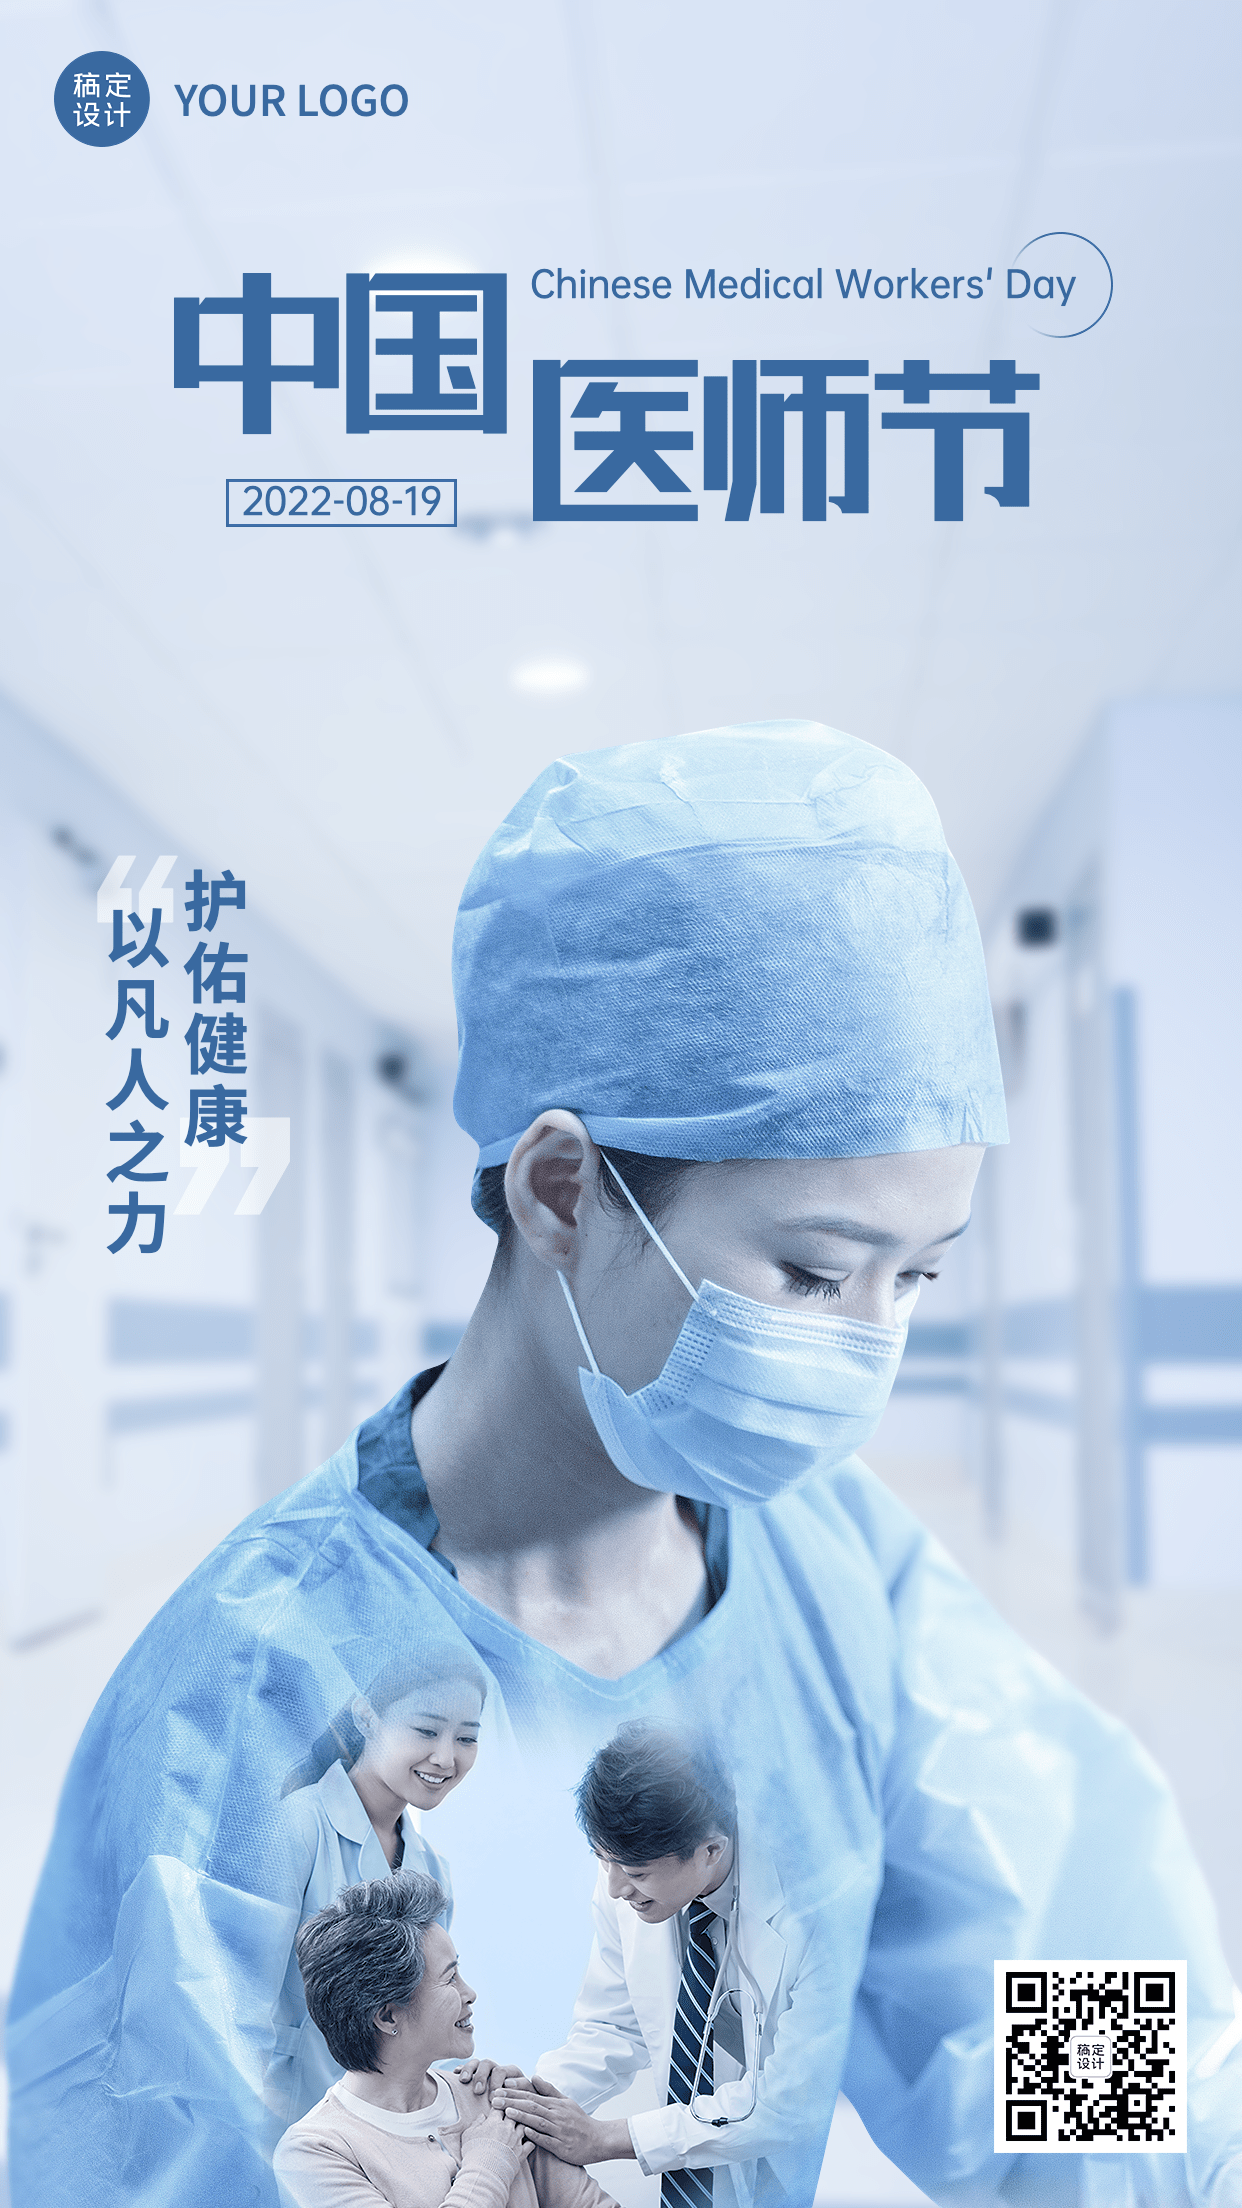 中国医师节节日宣传合成手机海报预览效果